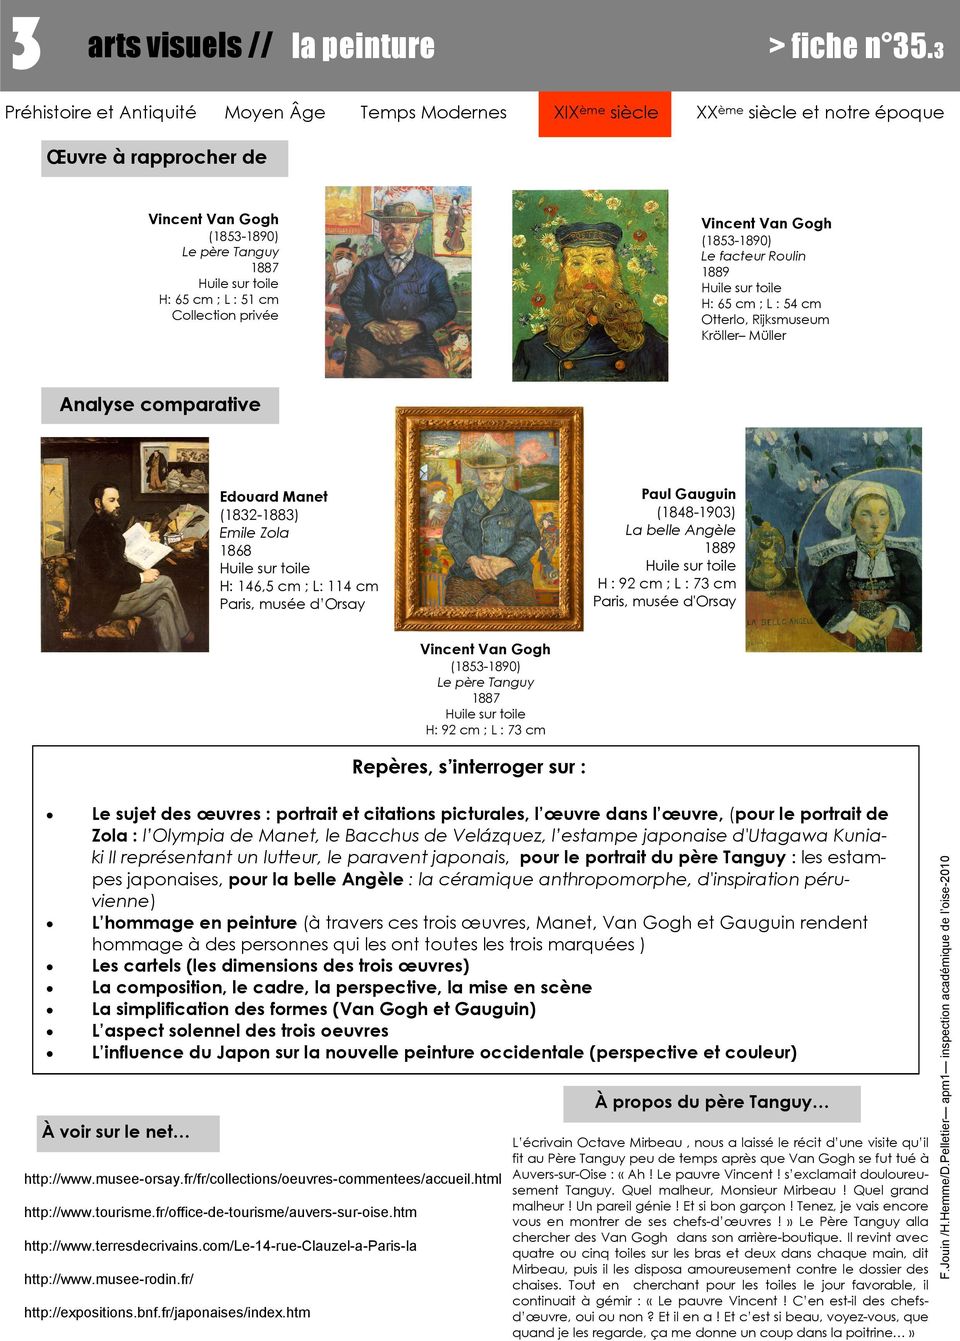 Paul Gauguin (1848-190) La belle Angèle H : 92 cm ; L : 7 cm Paris, musée d'orsay Edouard Manet (182-188) Emile Zola 1868 H: 146,5 cm ; L: 114 cm Paris, musée d Orsay H: 92 cm ; L : 7 cm Le sujet des